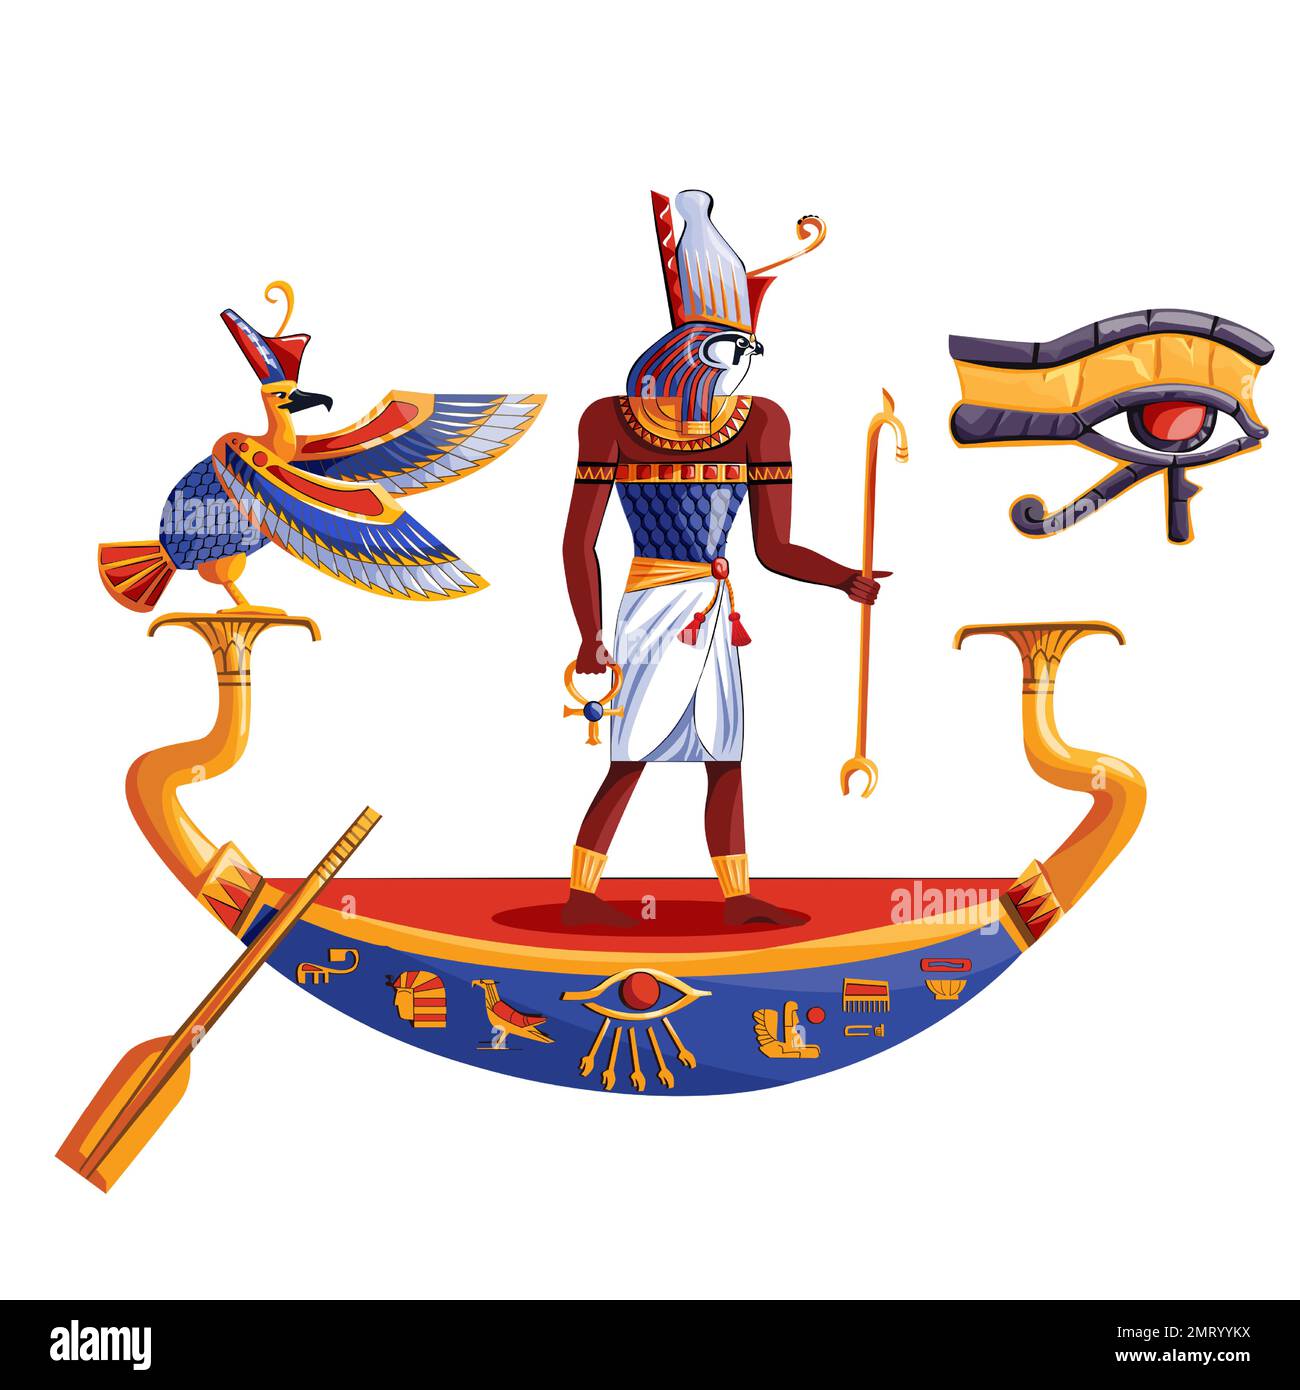 Antico Egitto sole dio Ra o Horus cartoon illustrazione vettoriale. Simboli religiosi della cultura egiziana, antico dio-falco in barca di notte o di giorno, uccello sacro, isolato su sfondo bianco Illustrazione Vettoriale